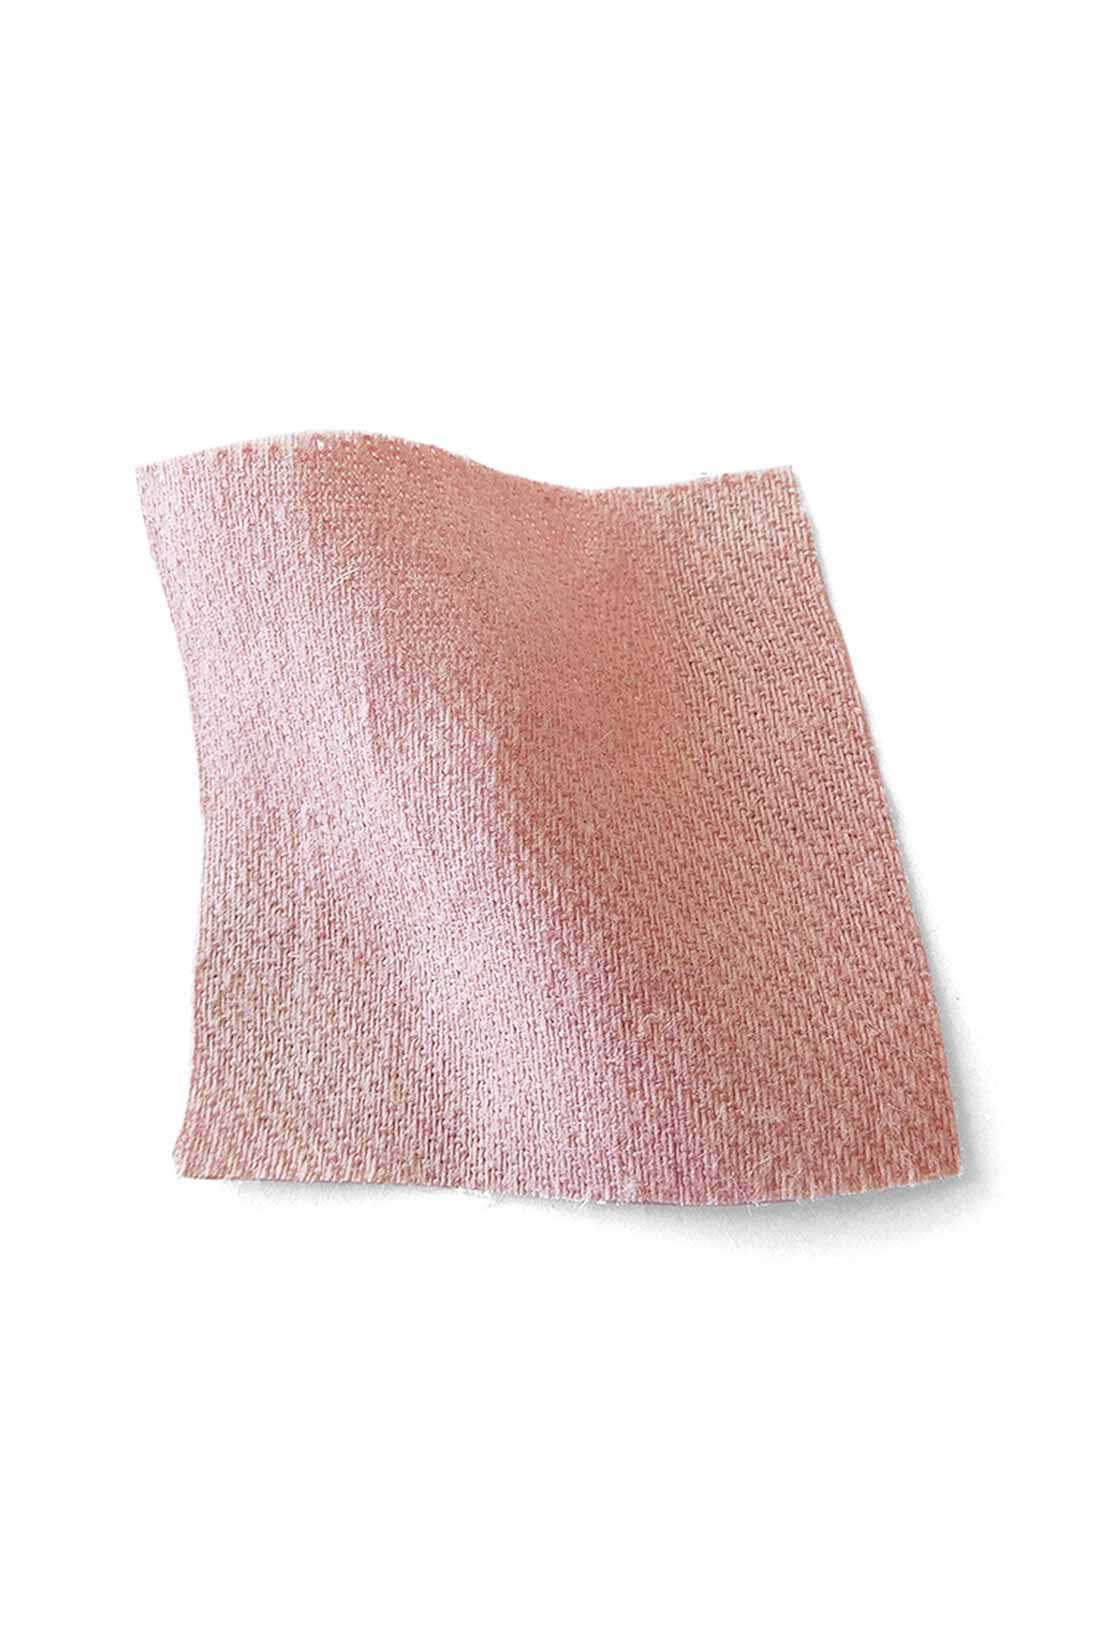 シロップ．|一枚で重ね着で 縁の下の力持ち綿麻パンツ〈くすみピンク〉